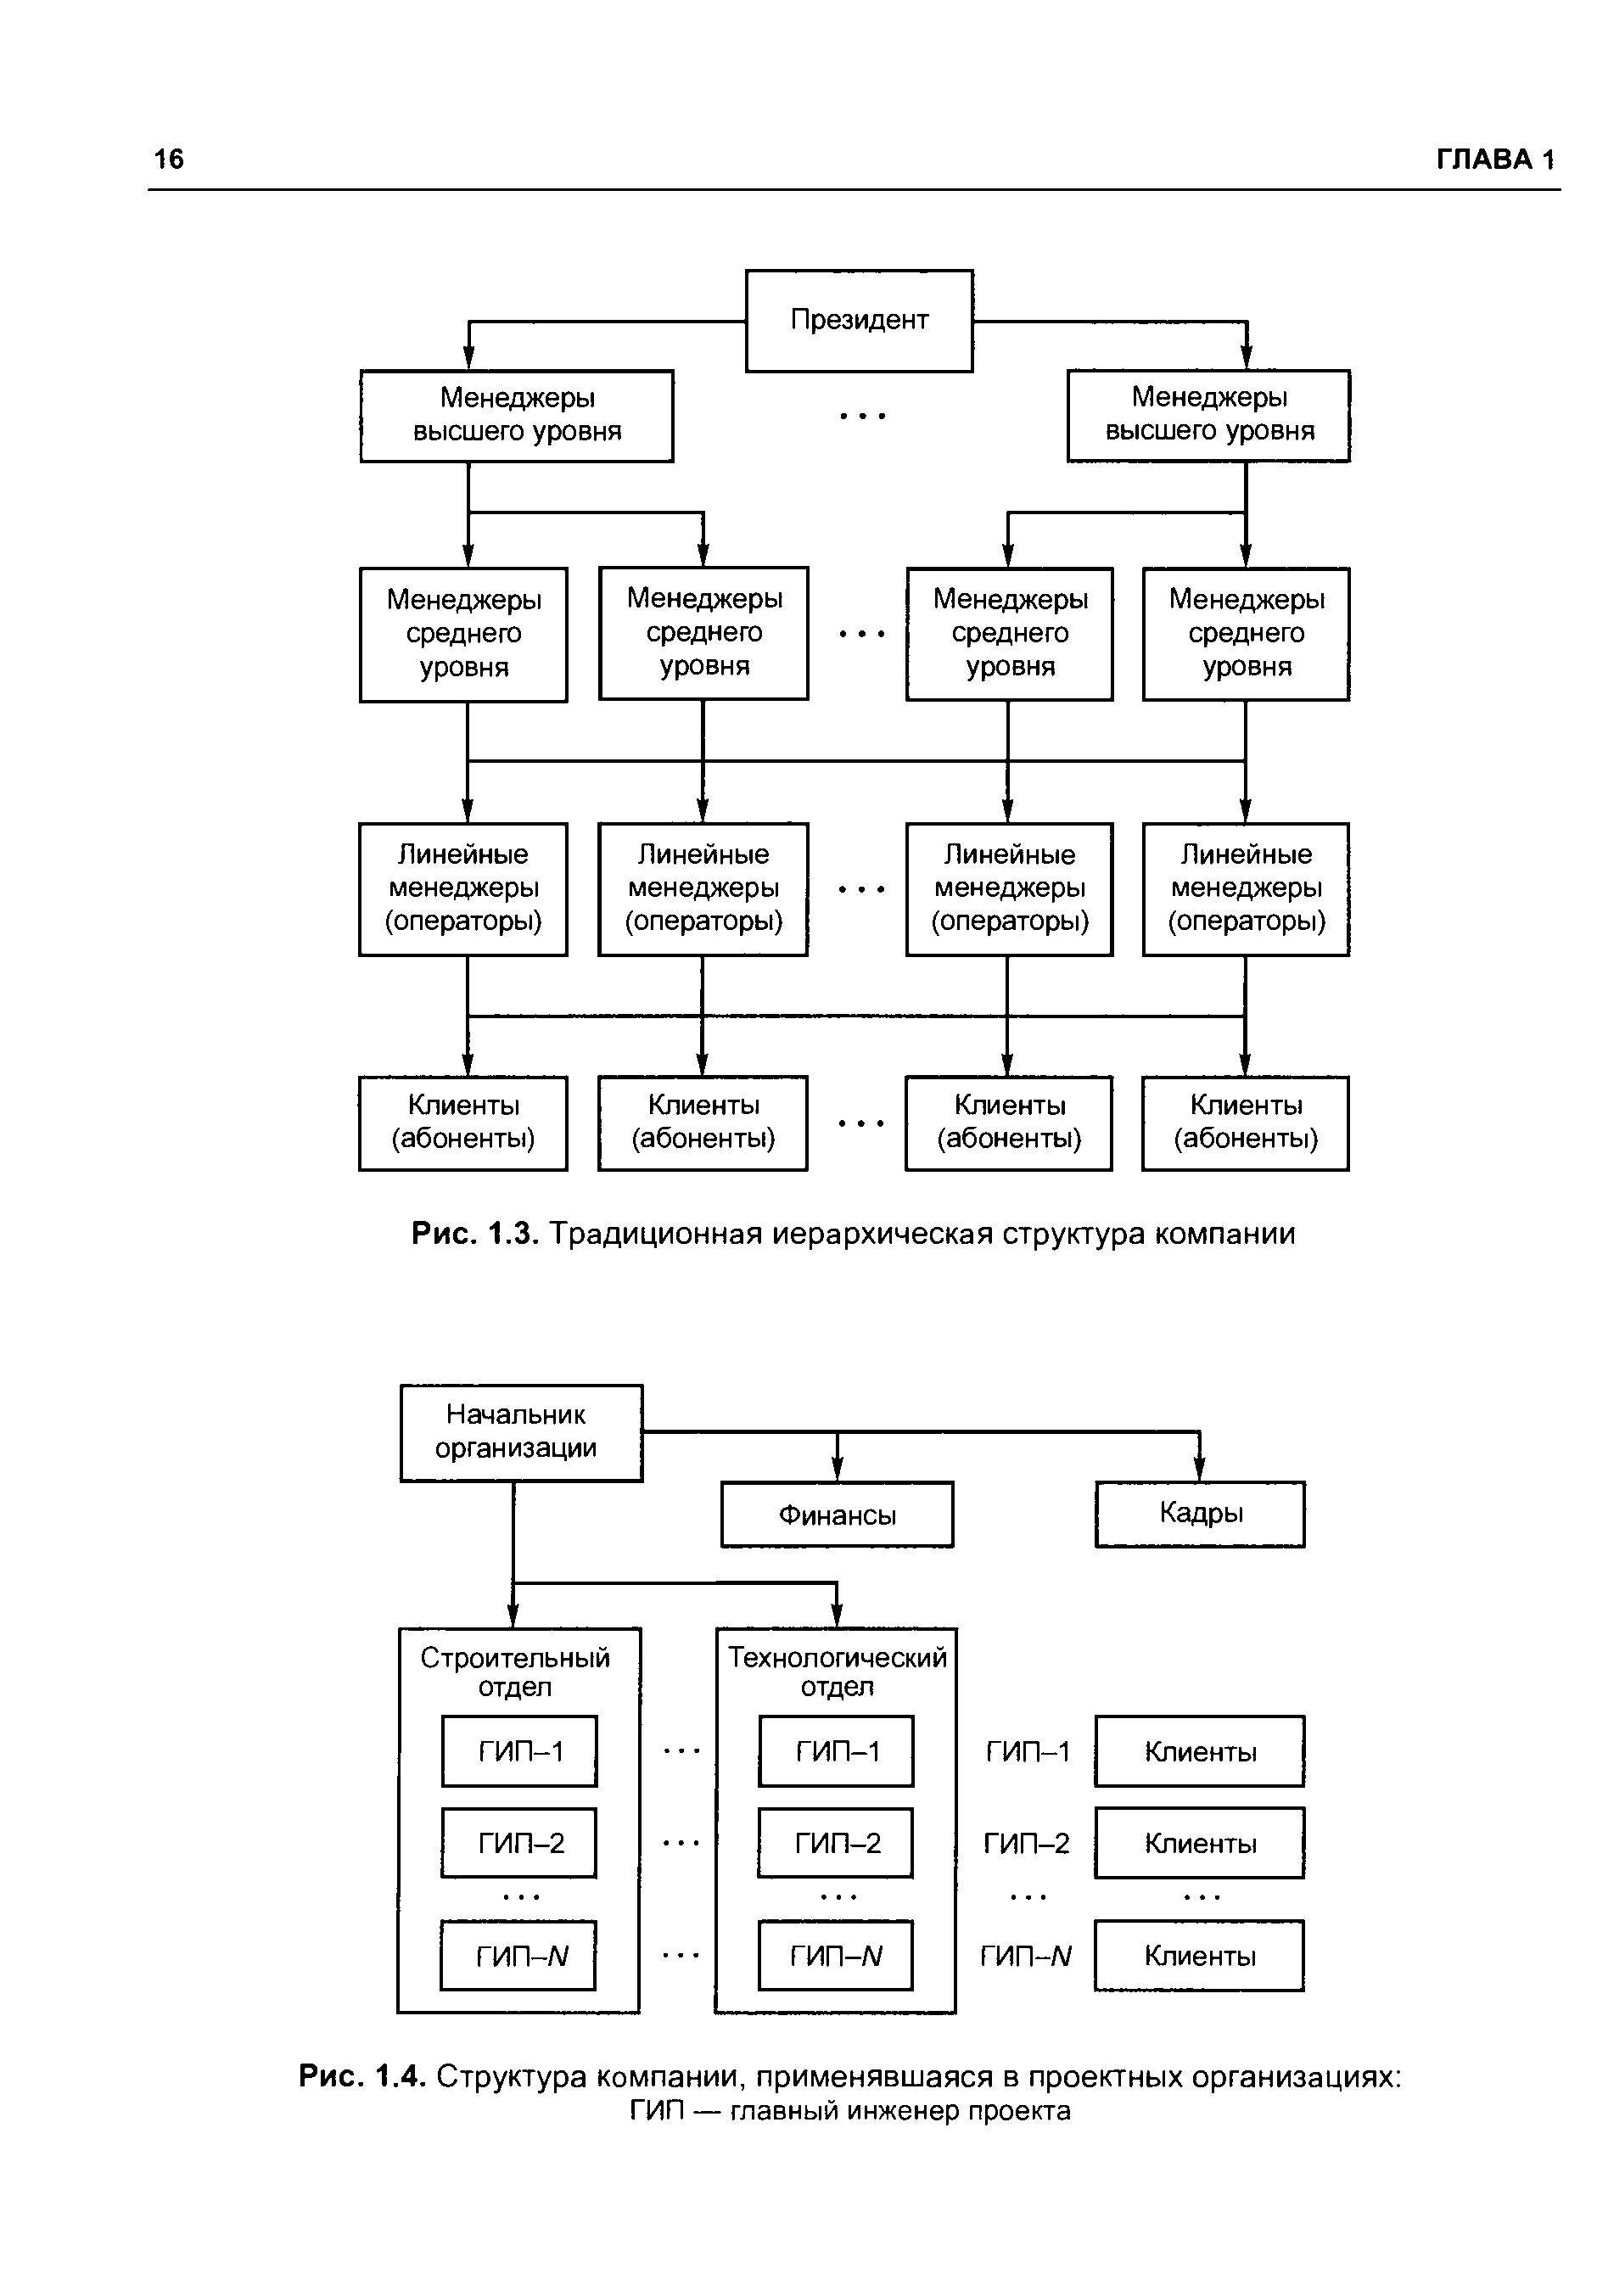 Рис. 1.3. Традиционная иерархическая структура компании
